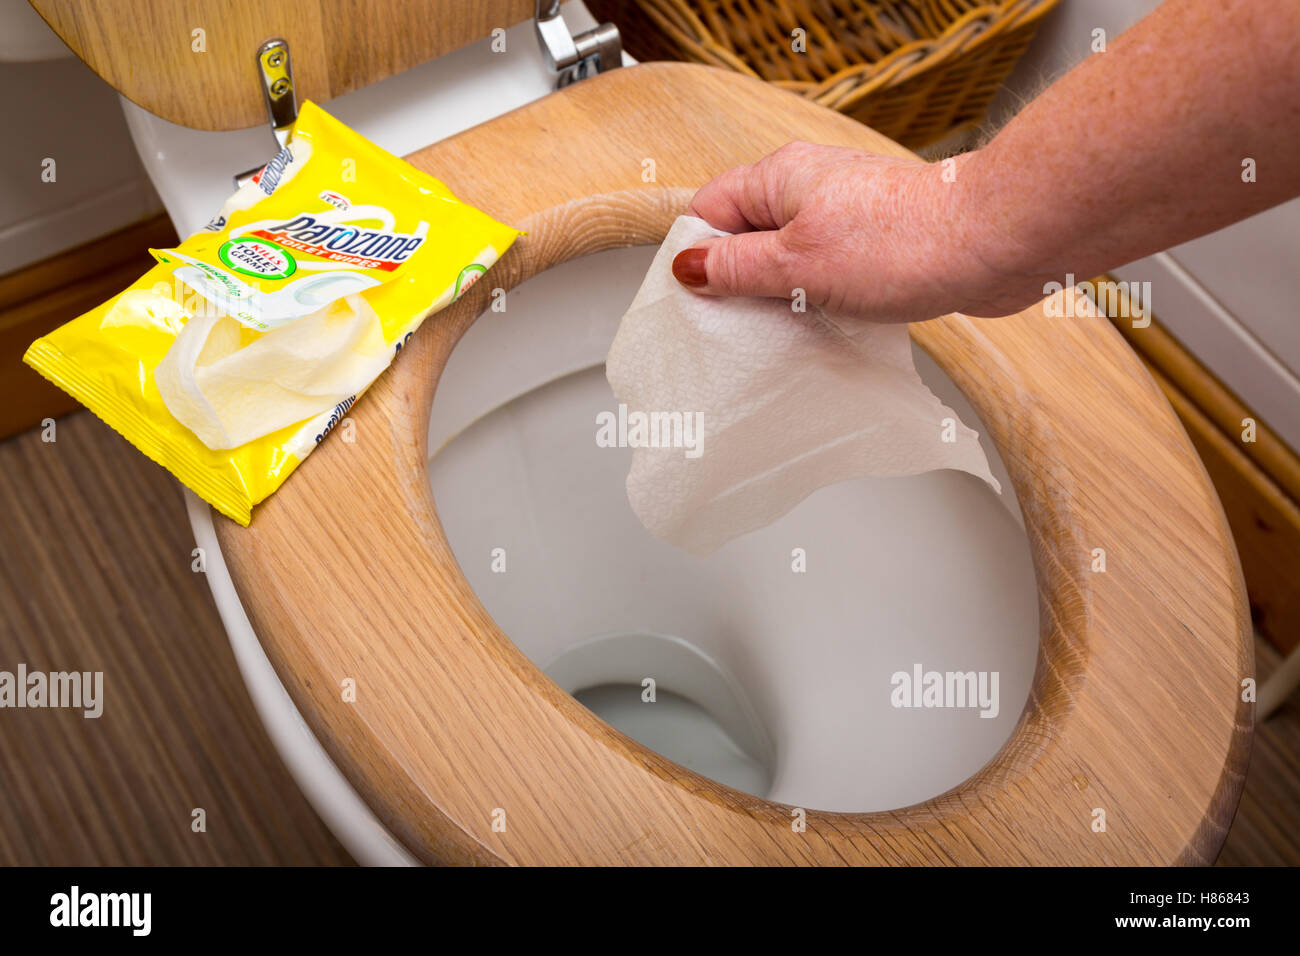 Lingettes humides pour nettoyer les toilettes avant de rincer à l'écart Banque D'Images